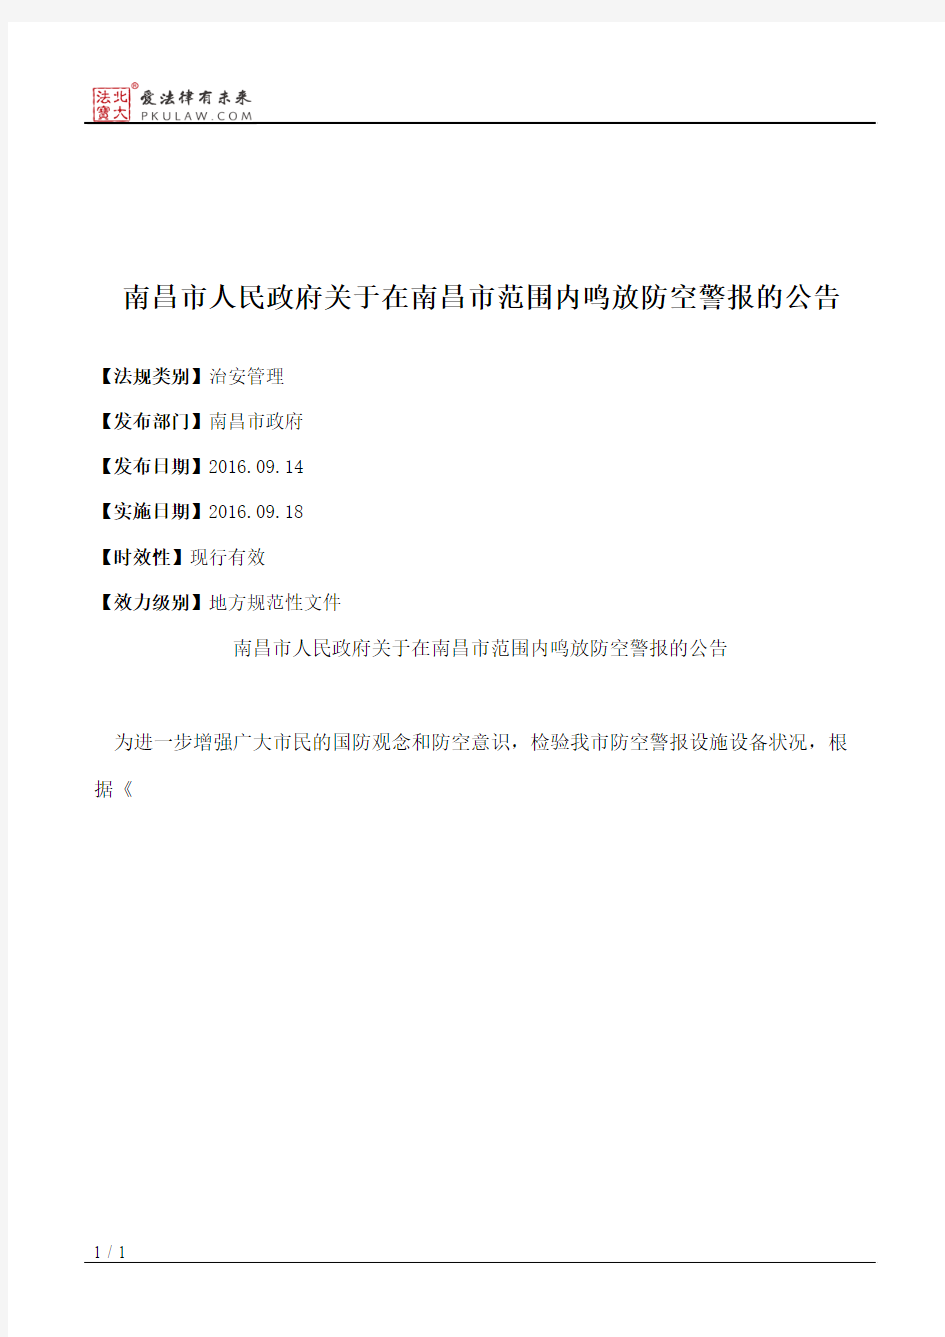 南昌市人民政府关于在南昌市范围内鸣放防空警报的公告